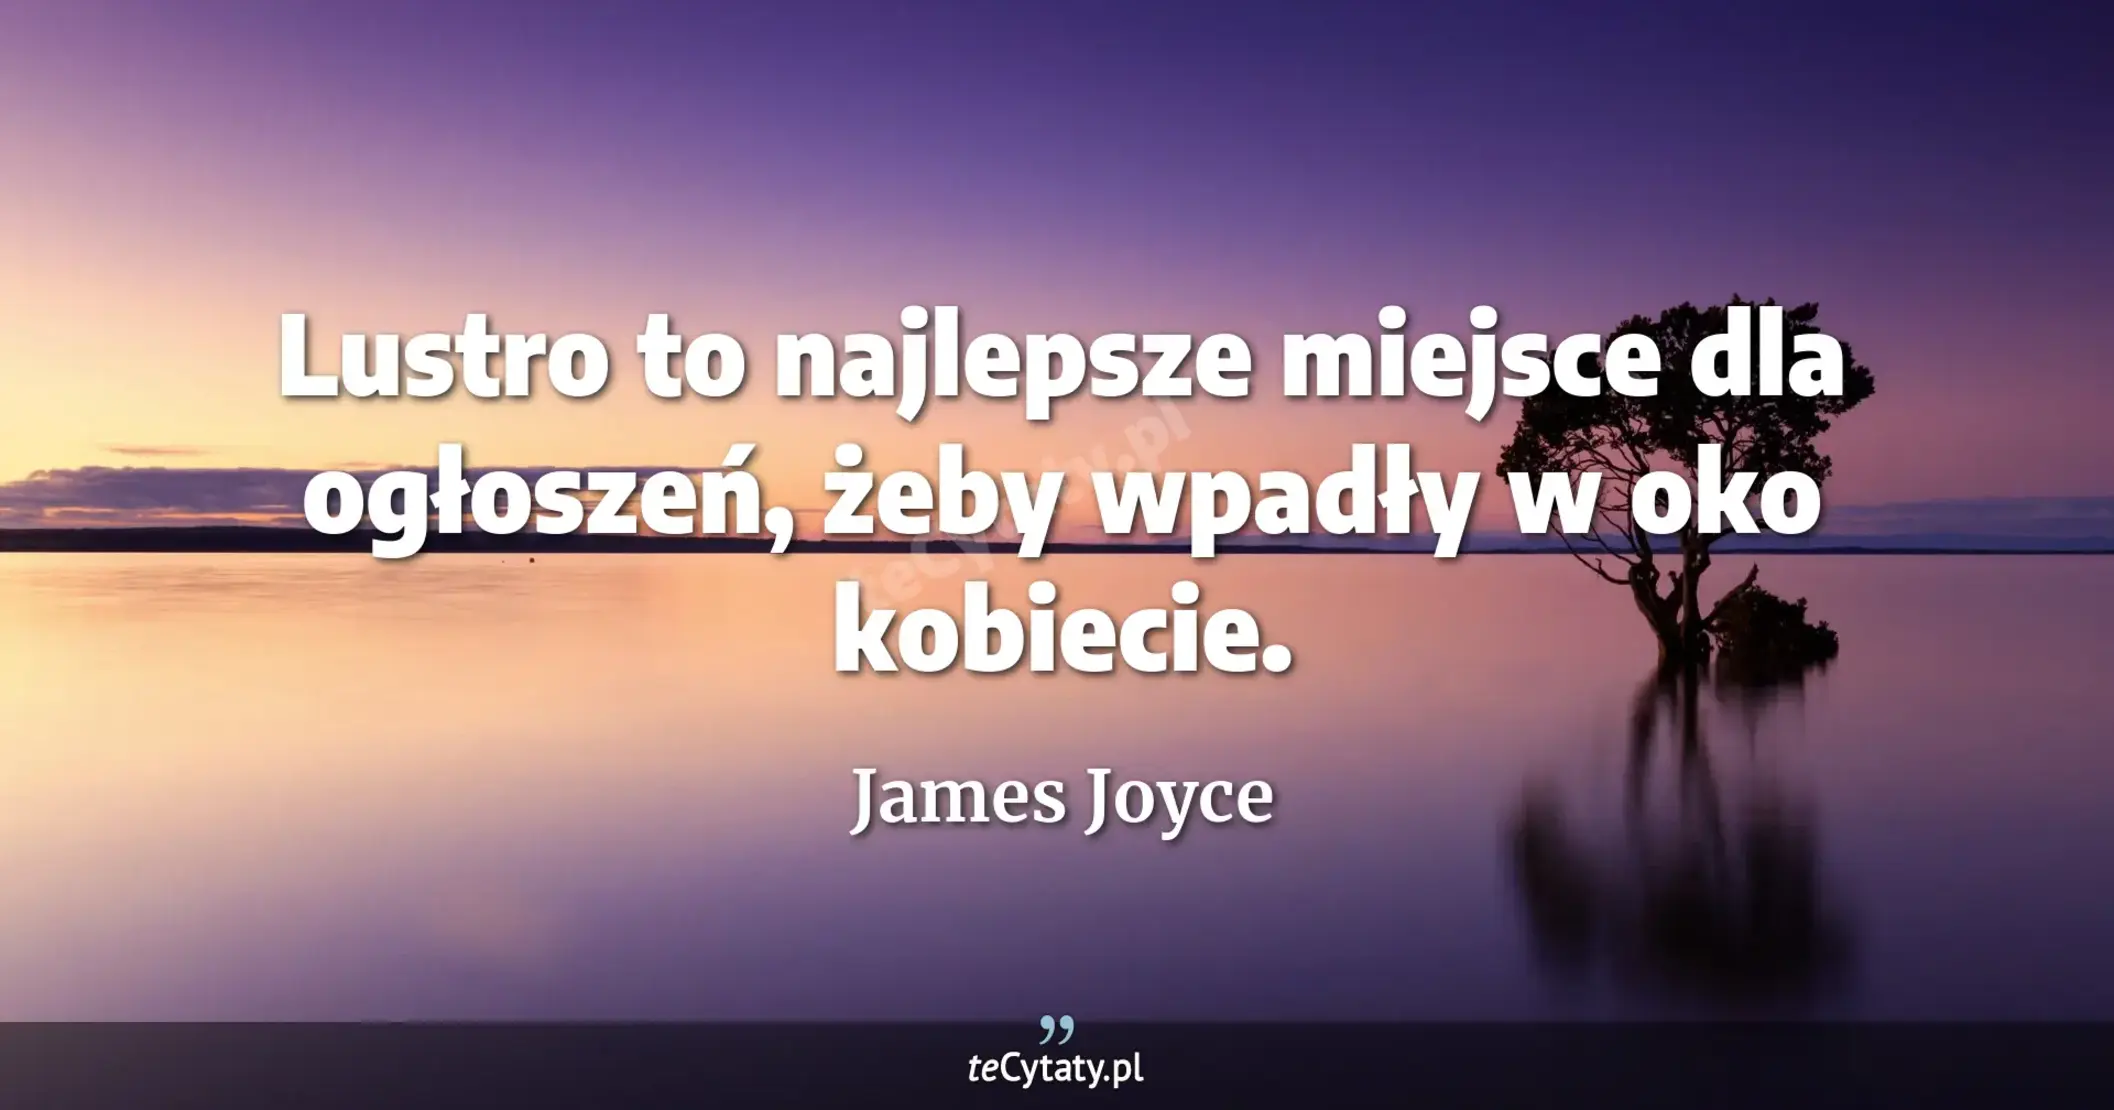 Lustro to najlepsze miejsce dla ogłoszeń, żeby wpadły w oko kobiecie. - James Joyce